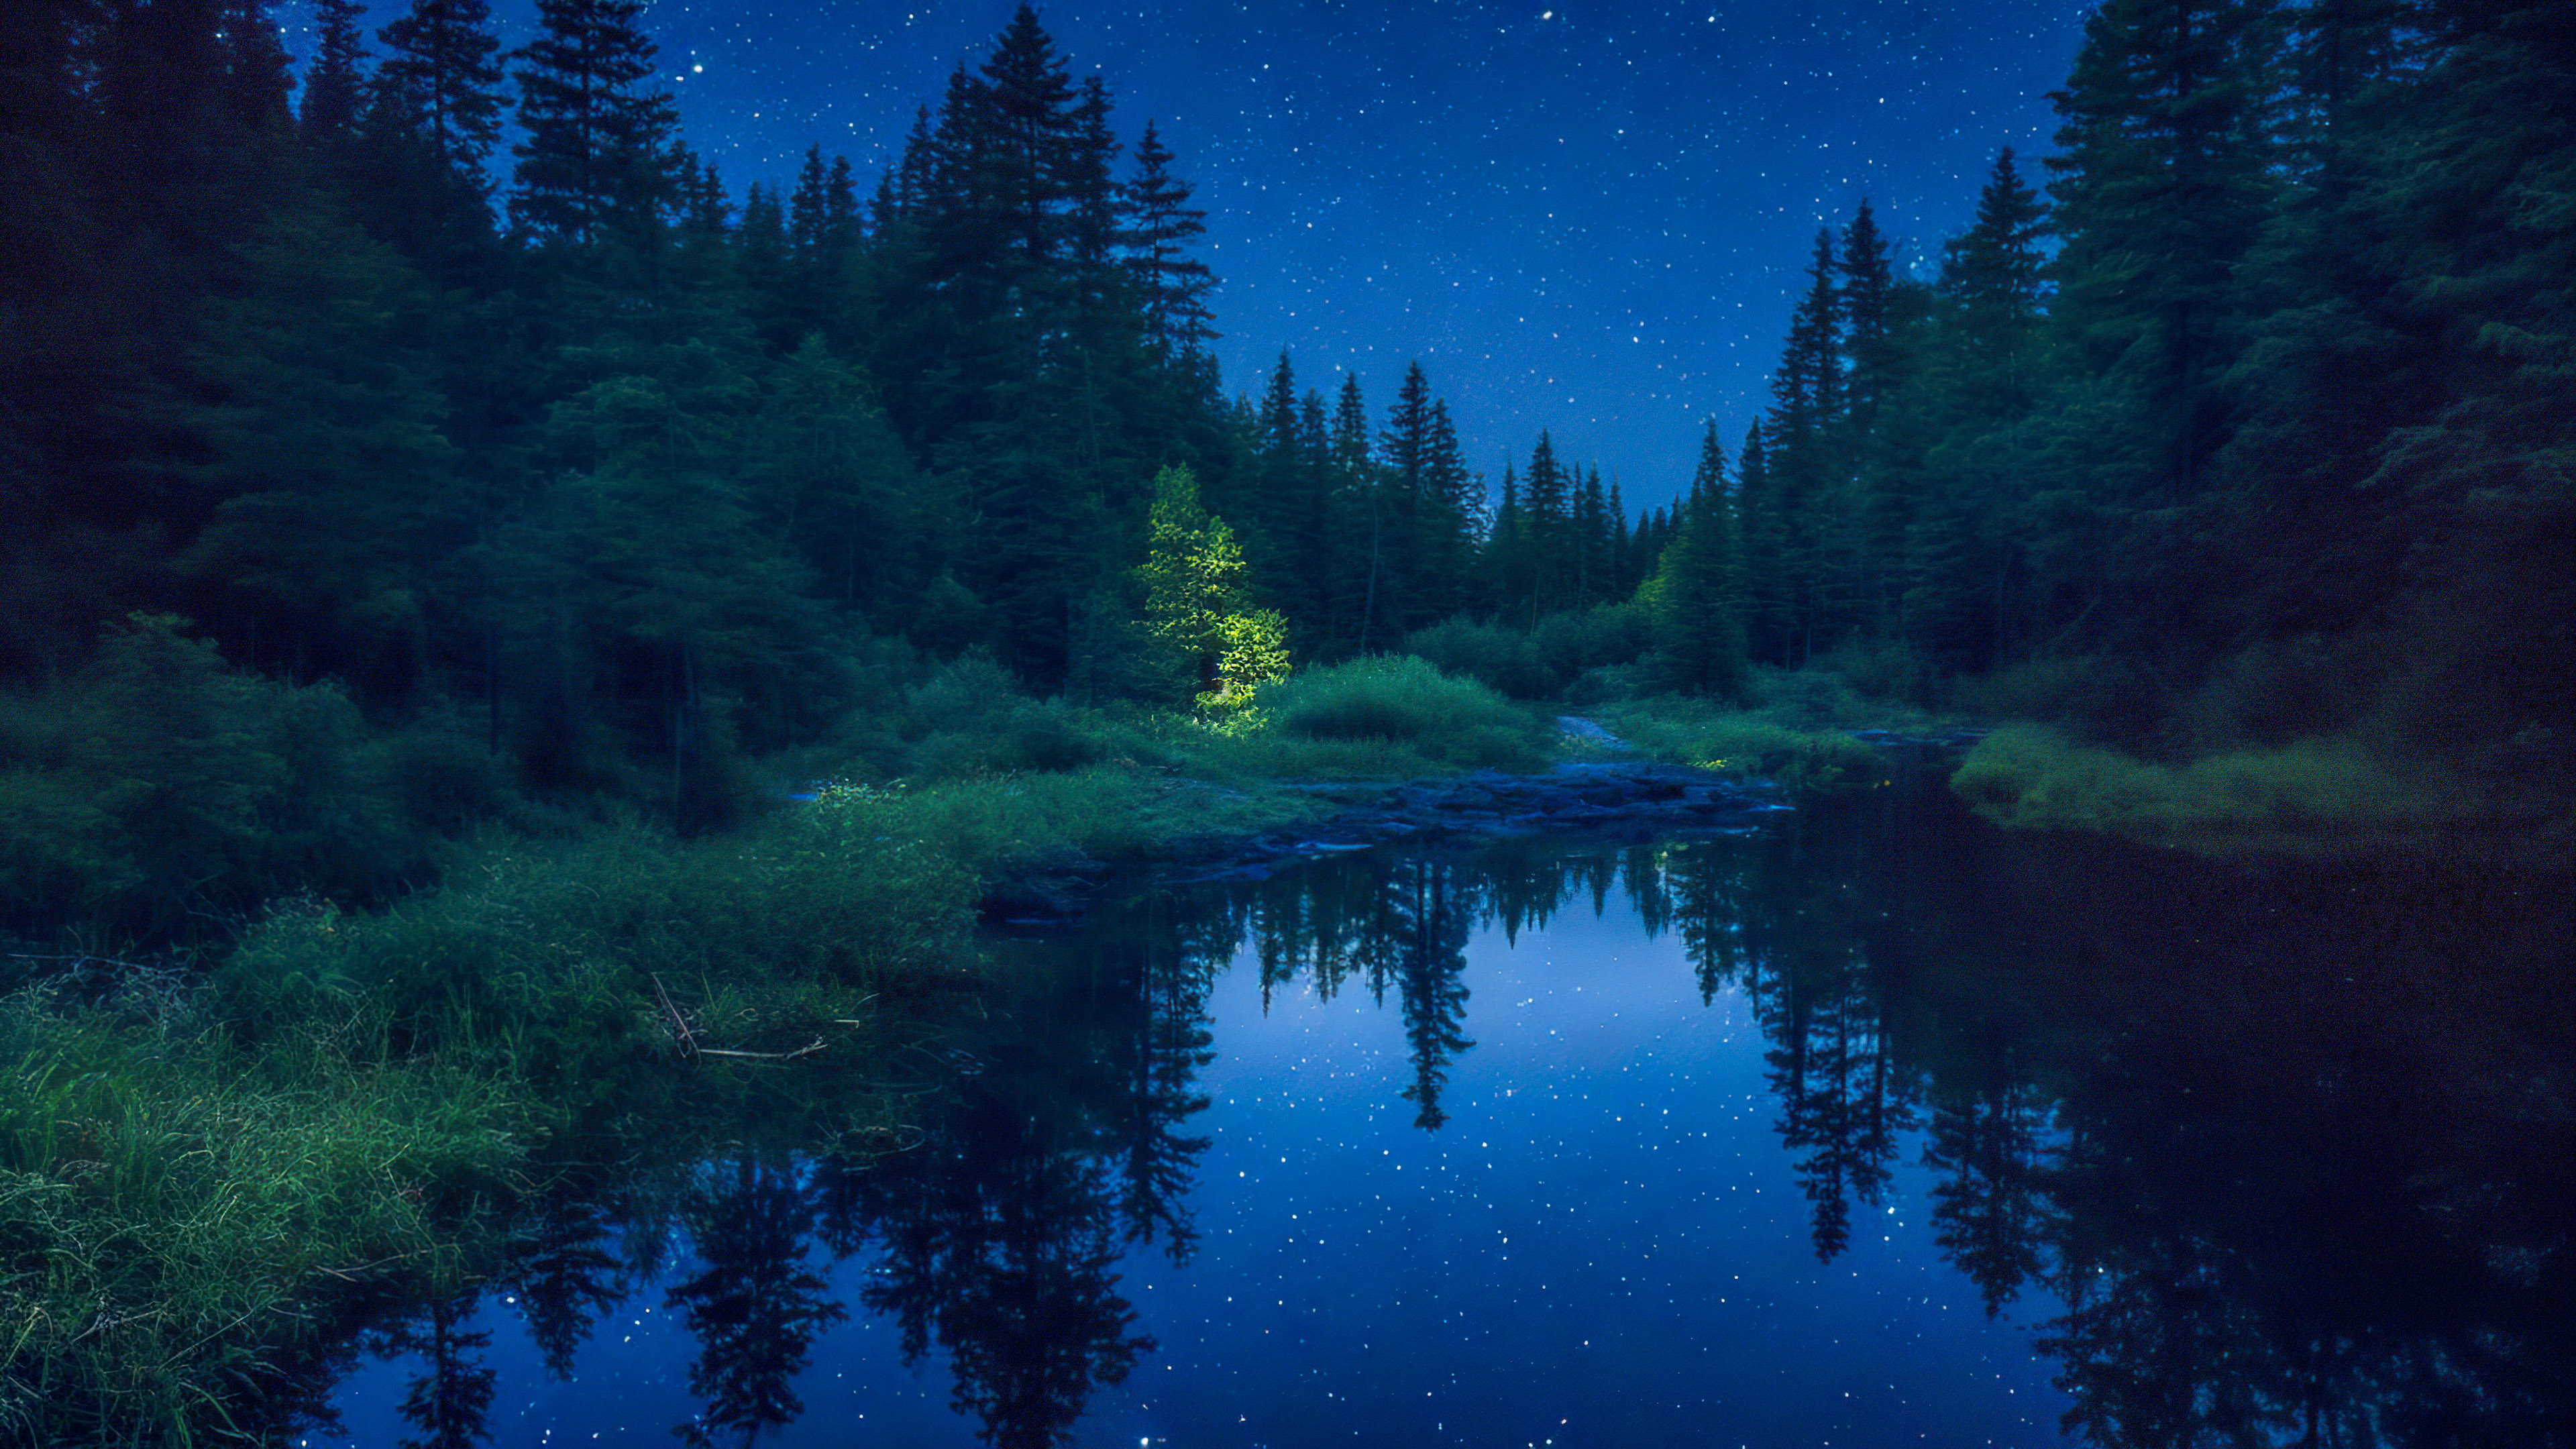 Vivez la tranquillité de notre bel arrière-plan de nuit, présentant une rivière paisible serpentant à travers une forêt dense, reflétant le ciel nocturne scintillant.